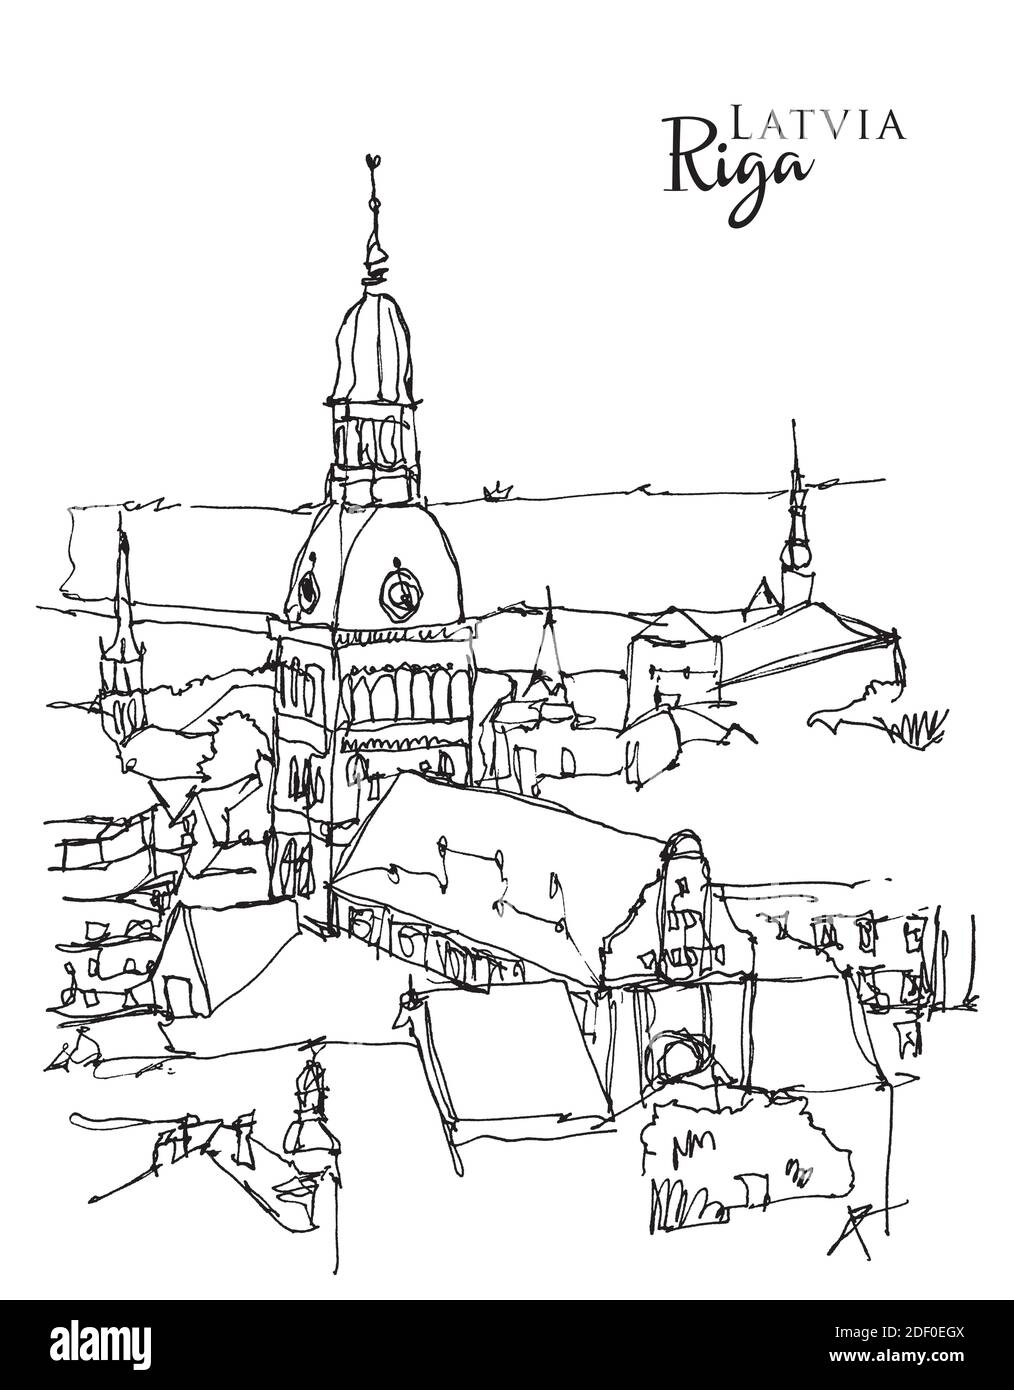 Illustration vectorielle dessinée à la main de Riga, la capitale de la Lettonie Illustration de Vecteur